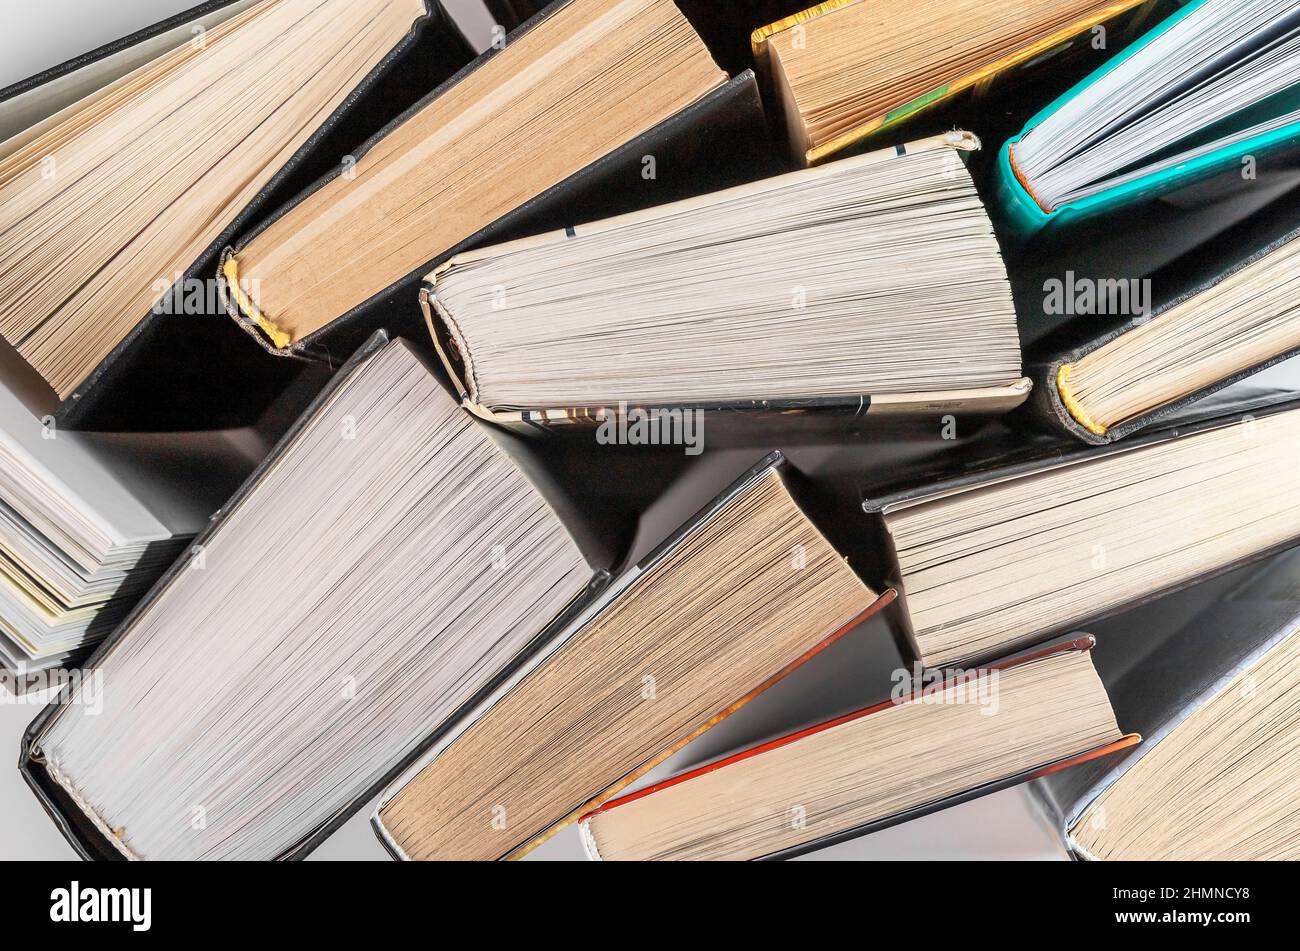 Bücher stapeln sich. Bildung und Literatur Lesekonzept. Wörterbücher, Romane, Enzyklopädien. Hochwertige Fotos Stockfoto